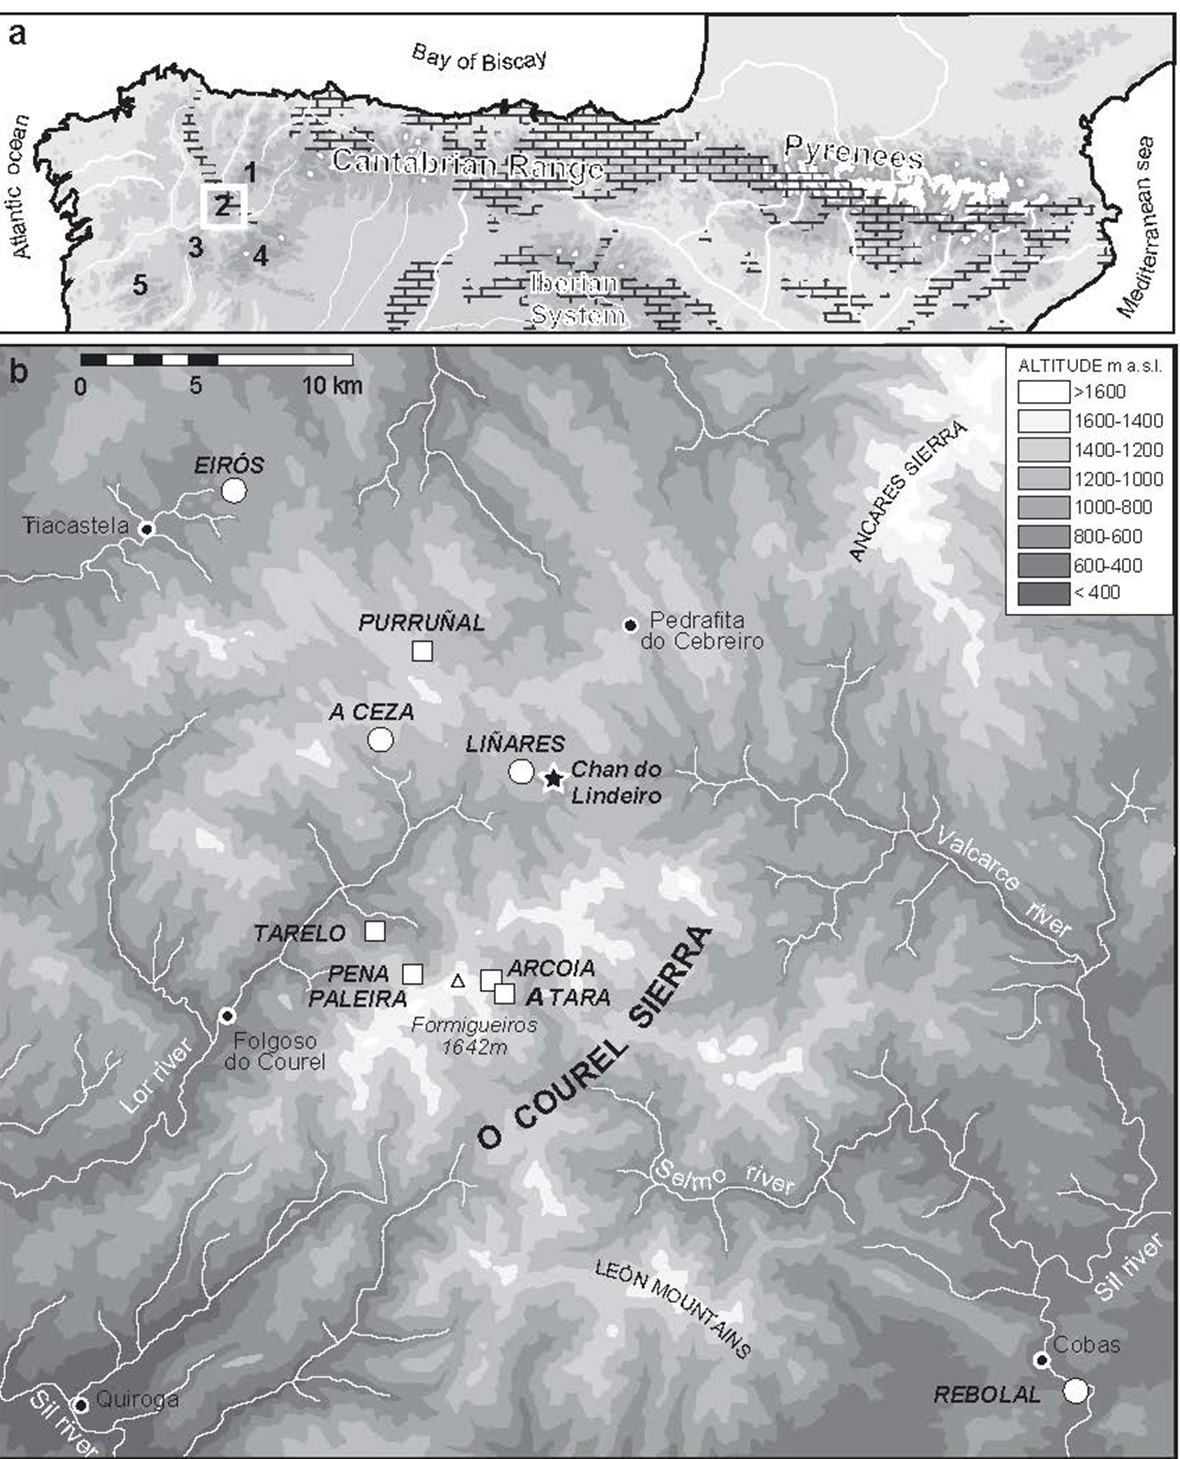 Situación de la principales cuevas existentes en la zona de O Courel.